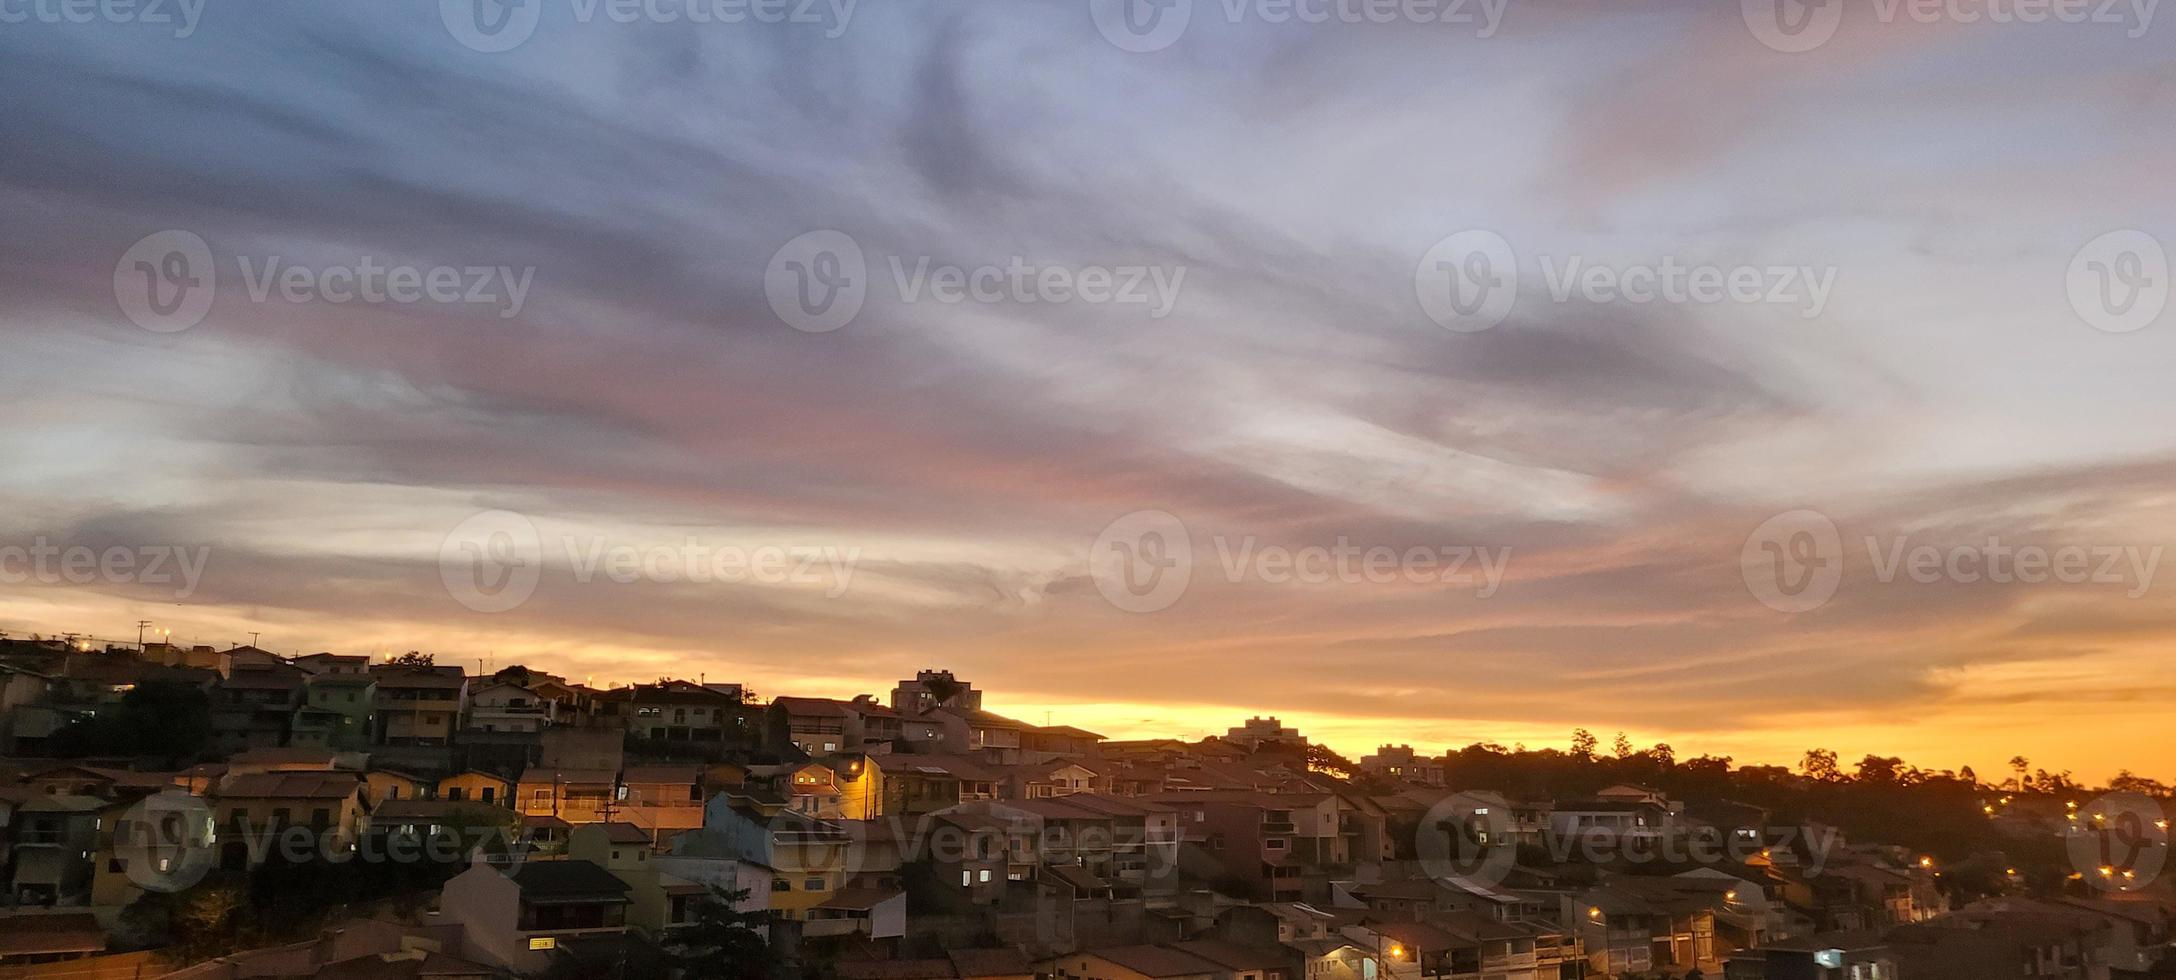 Farbenfroher Sonnenuntergang am späten Nachmittag in der Landschaft Brasiliens foto